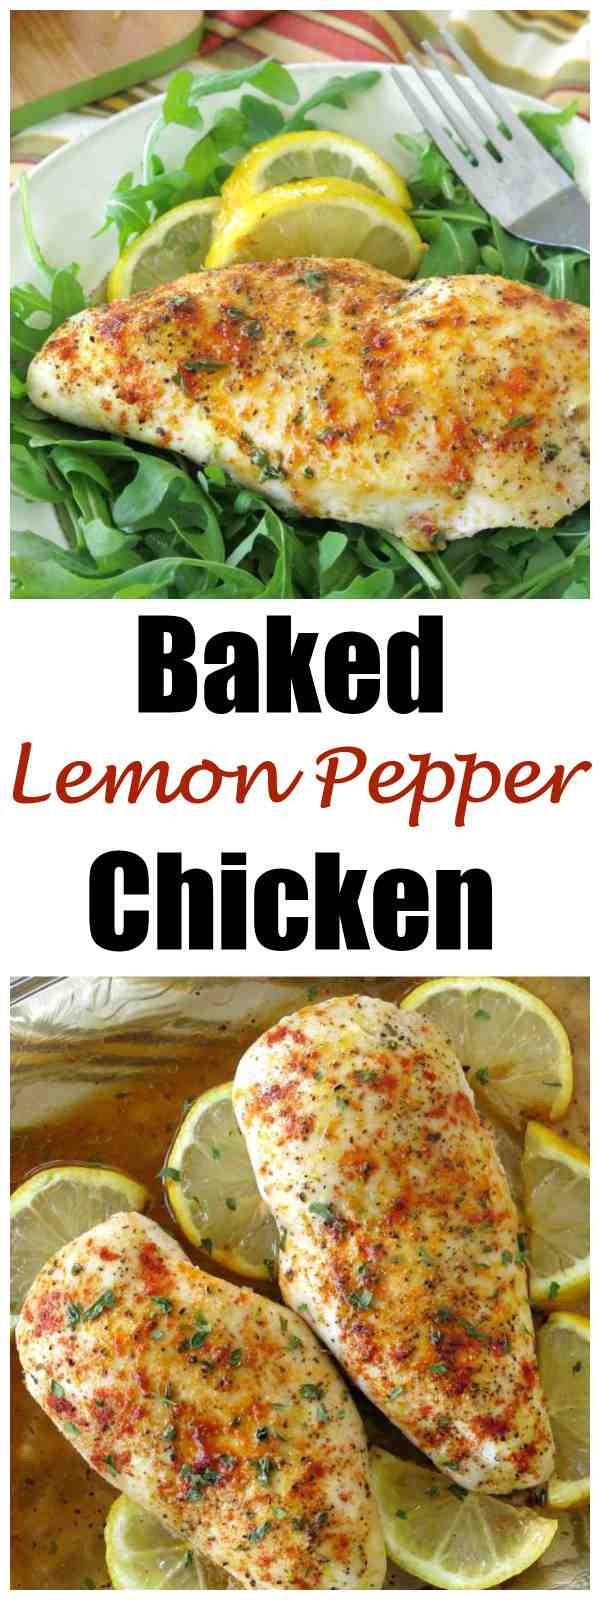 Baked Lemon Chicken Breast Recipe
 Baked Lemon Pepper Chicken Recipe The Dinner Mom